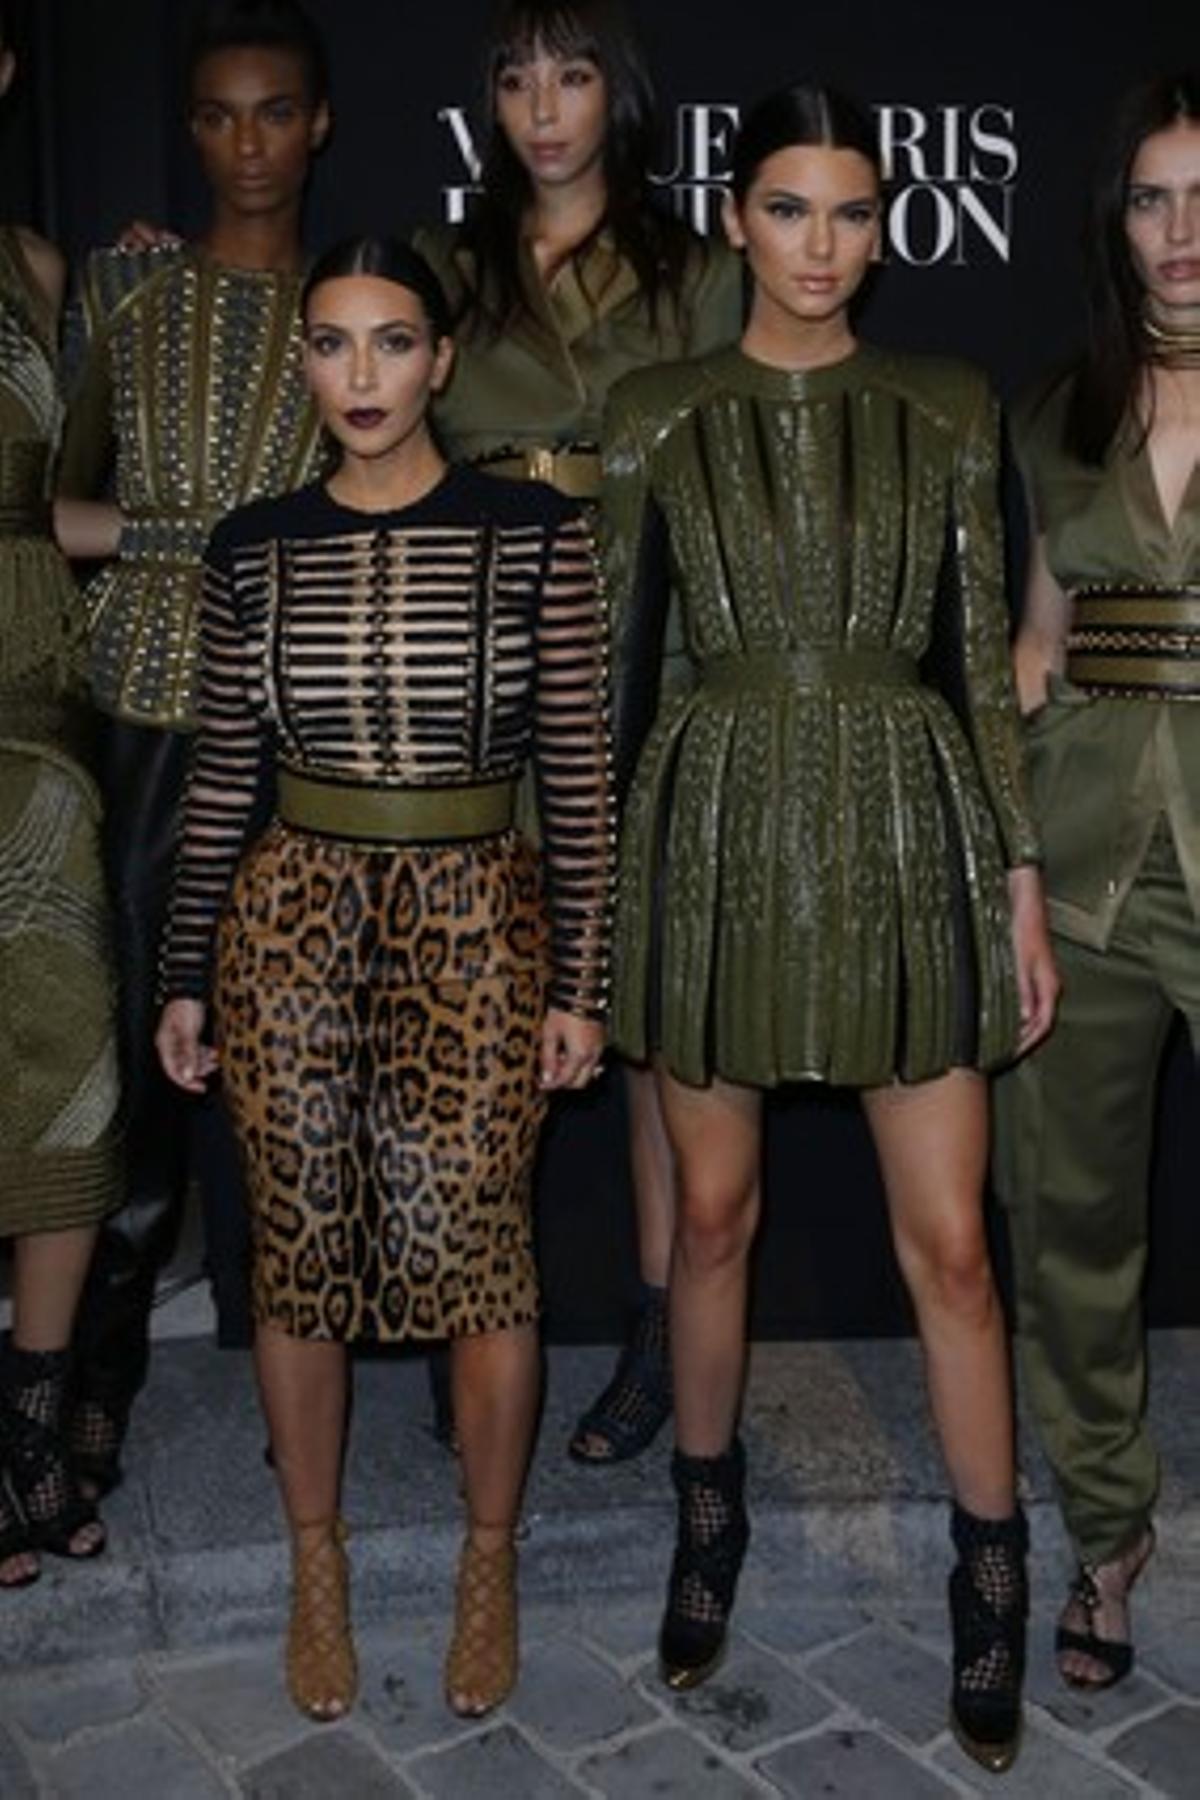 La ’celebritie’ Kim Kardashian amb la seva germana, la model Kendall Jenner, a la festa de ’Vogue Paris Foundation’.